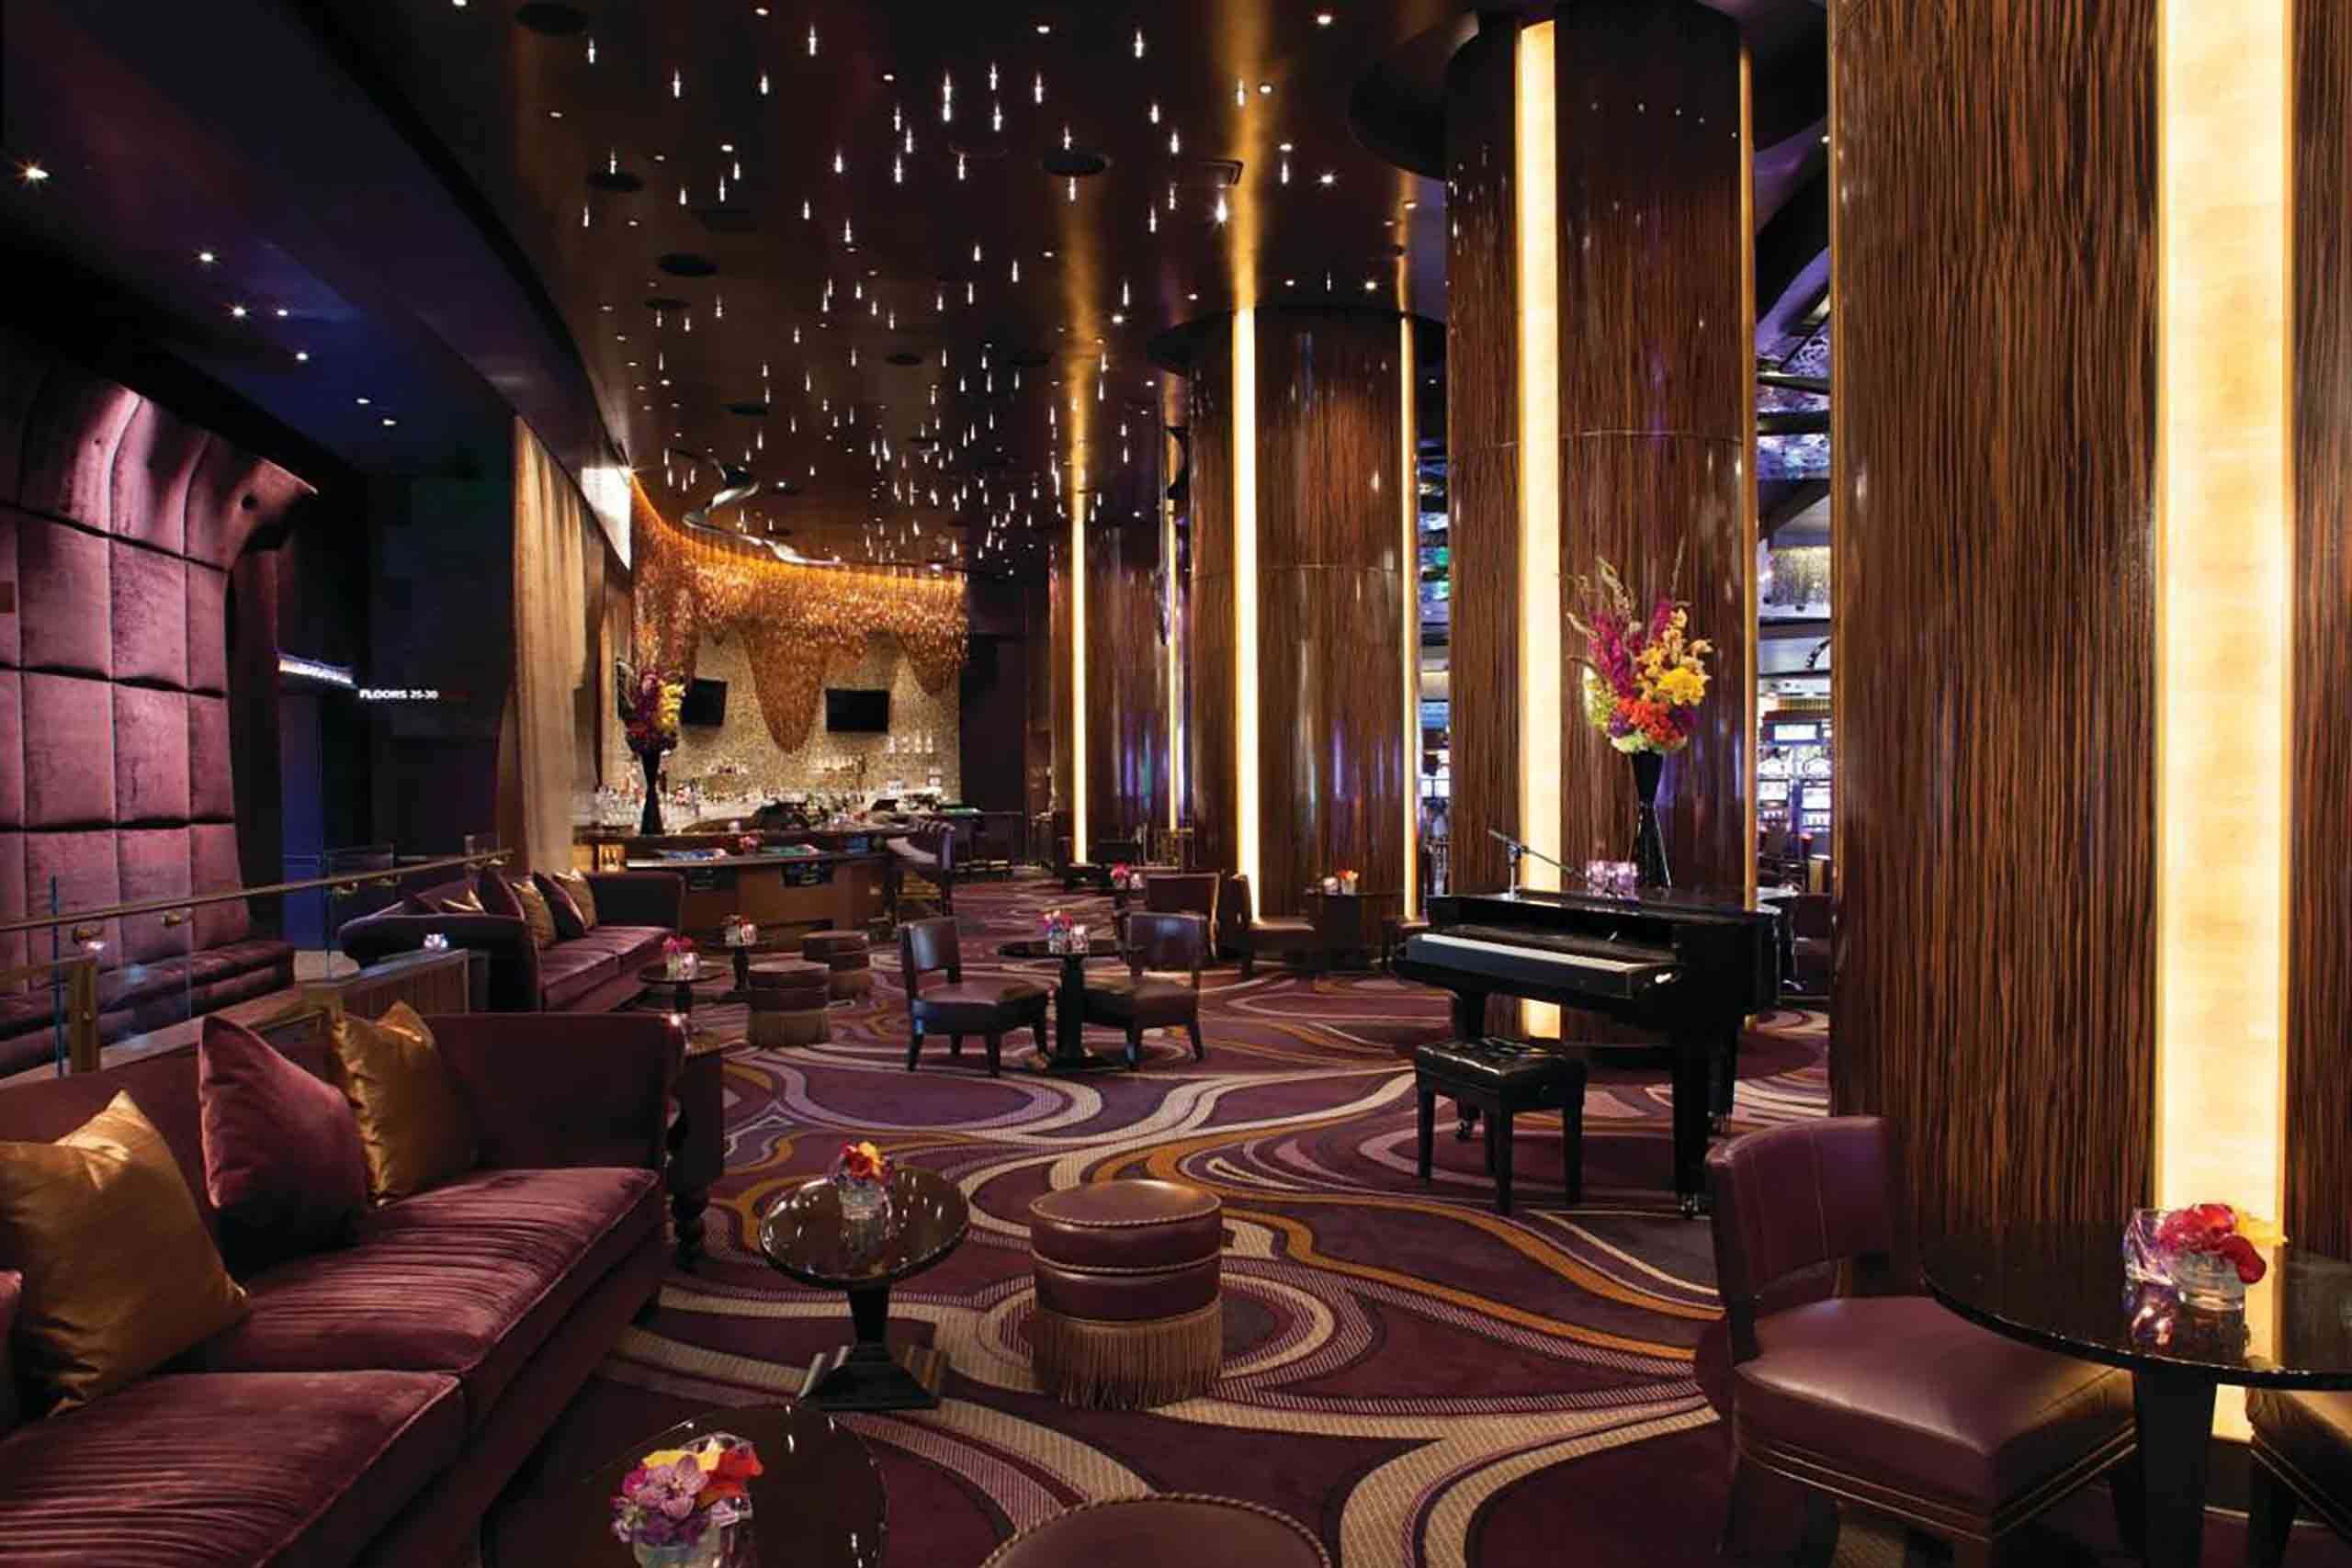 Interiors of the ARIA Resort & Casino, Las Vegas, Nevada